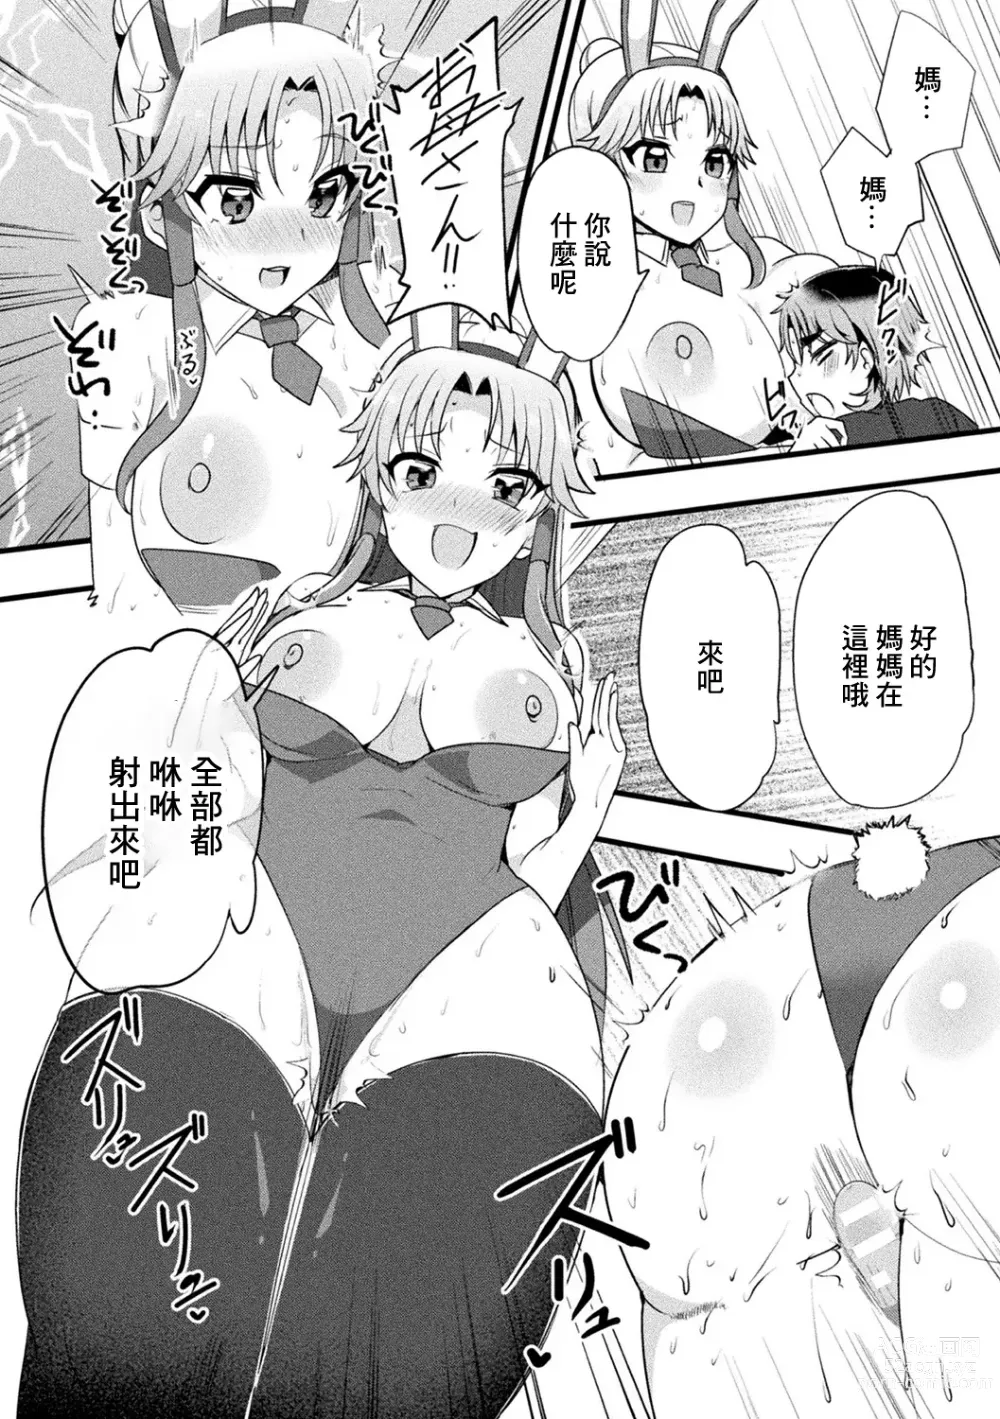 Page 18 of manga Mama Doko Doko - Mom! Where are you?